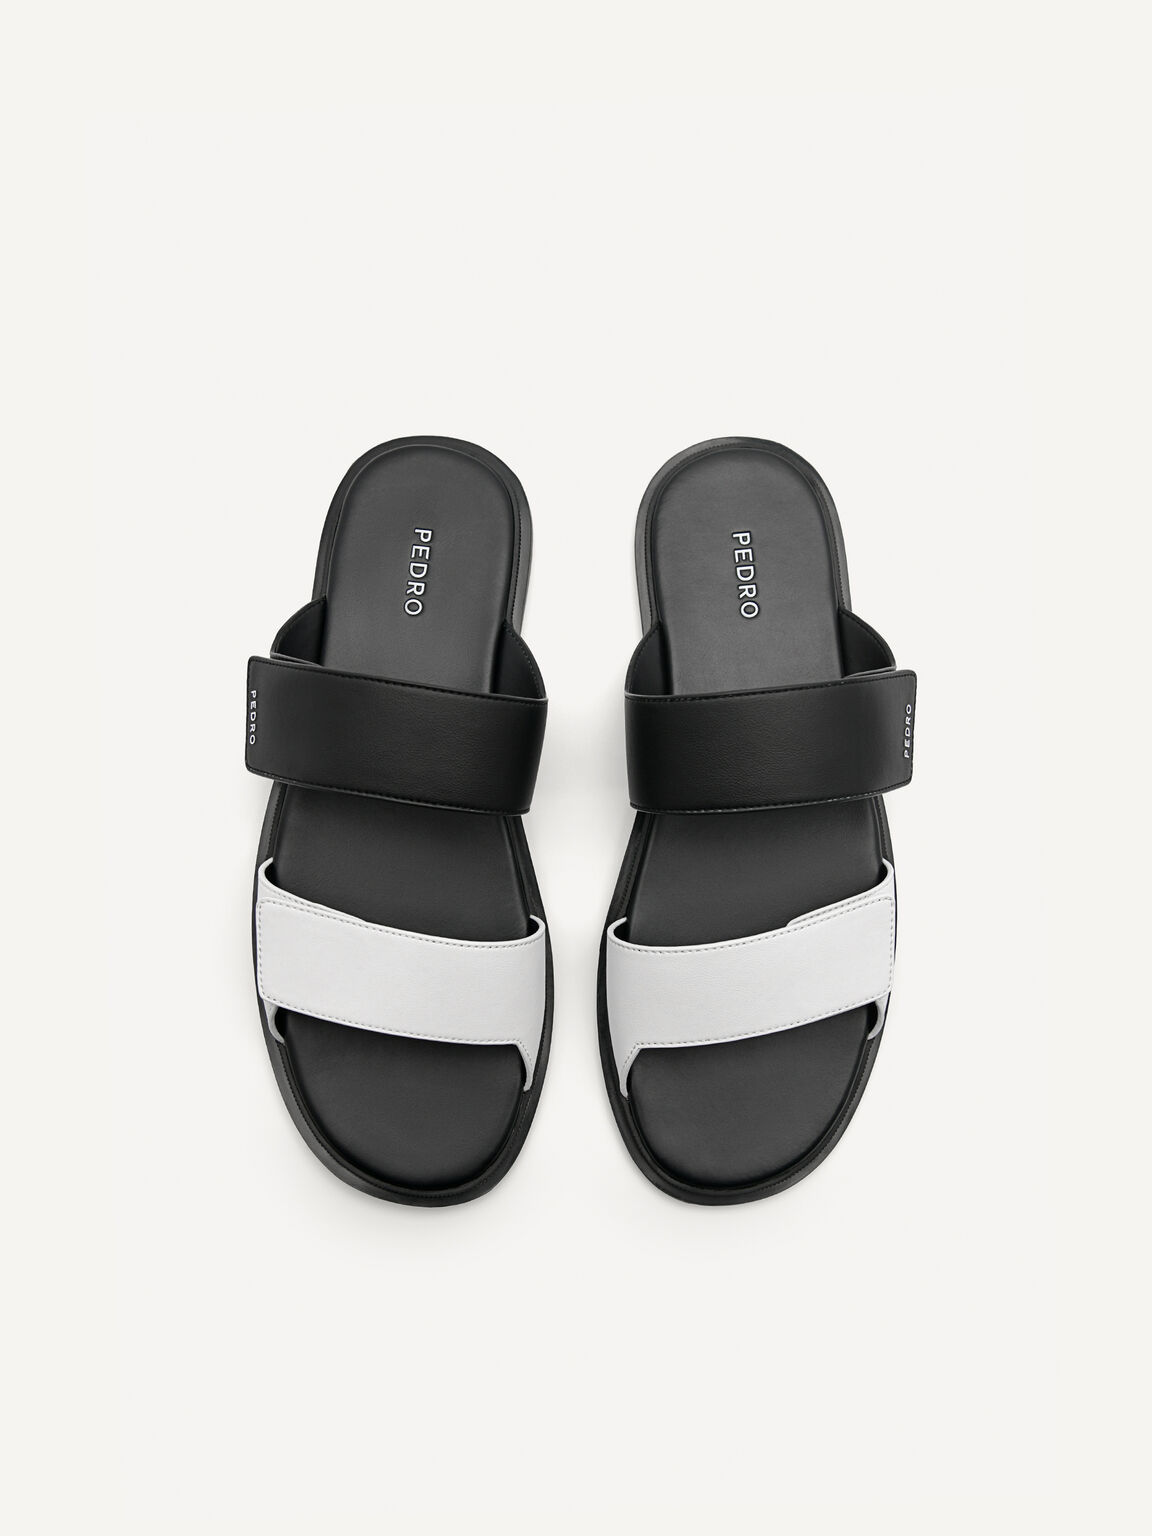 Stride Slide Sandals, Black, hi-res